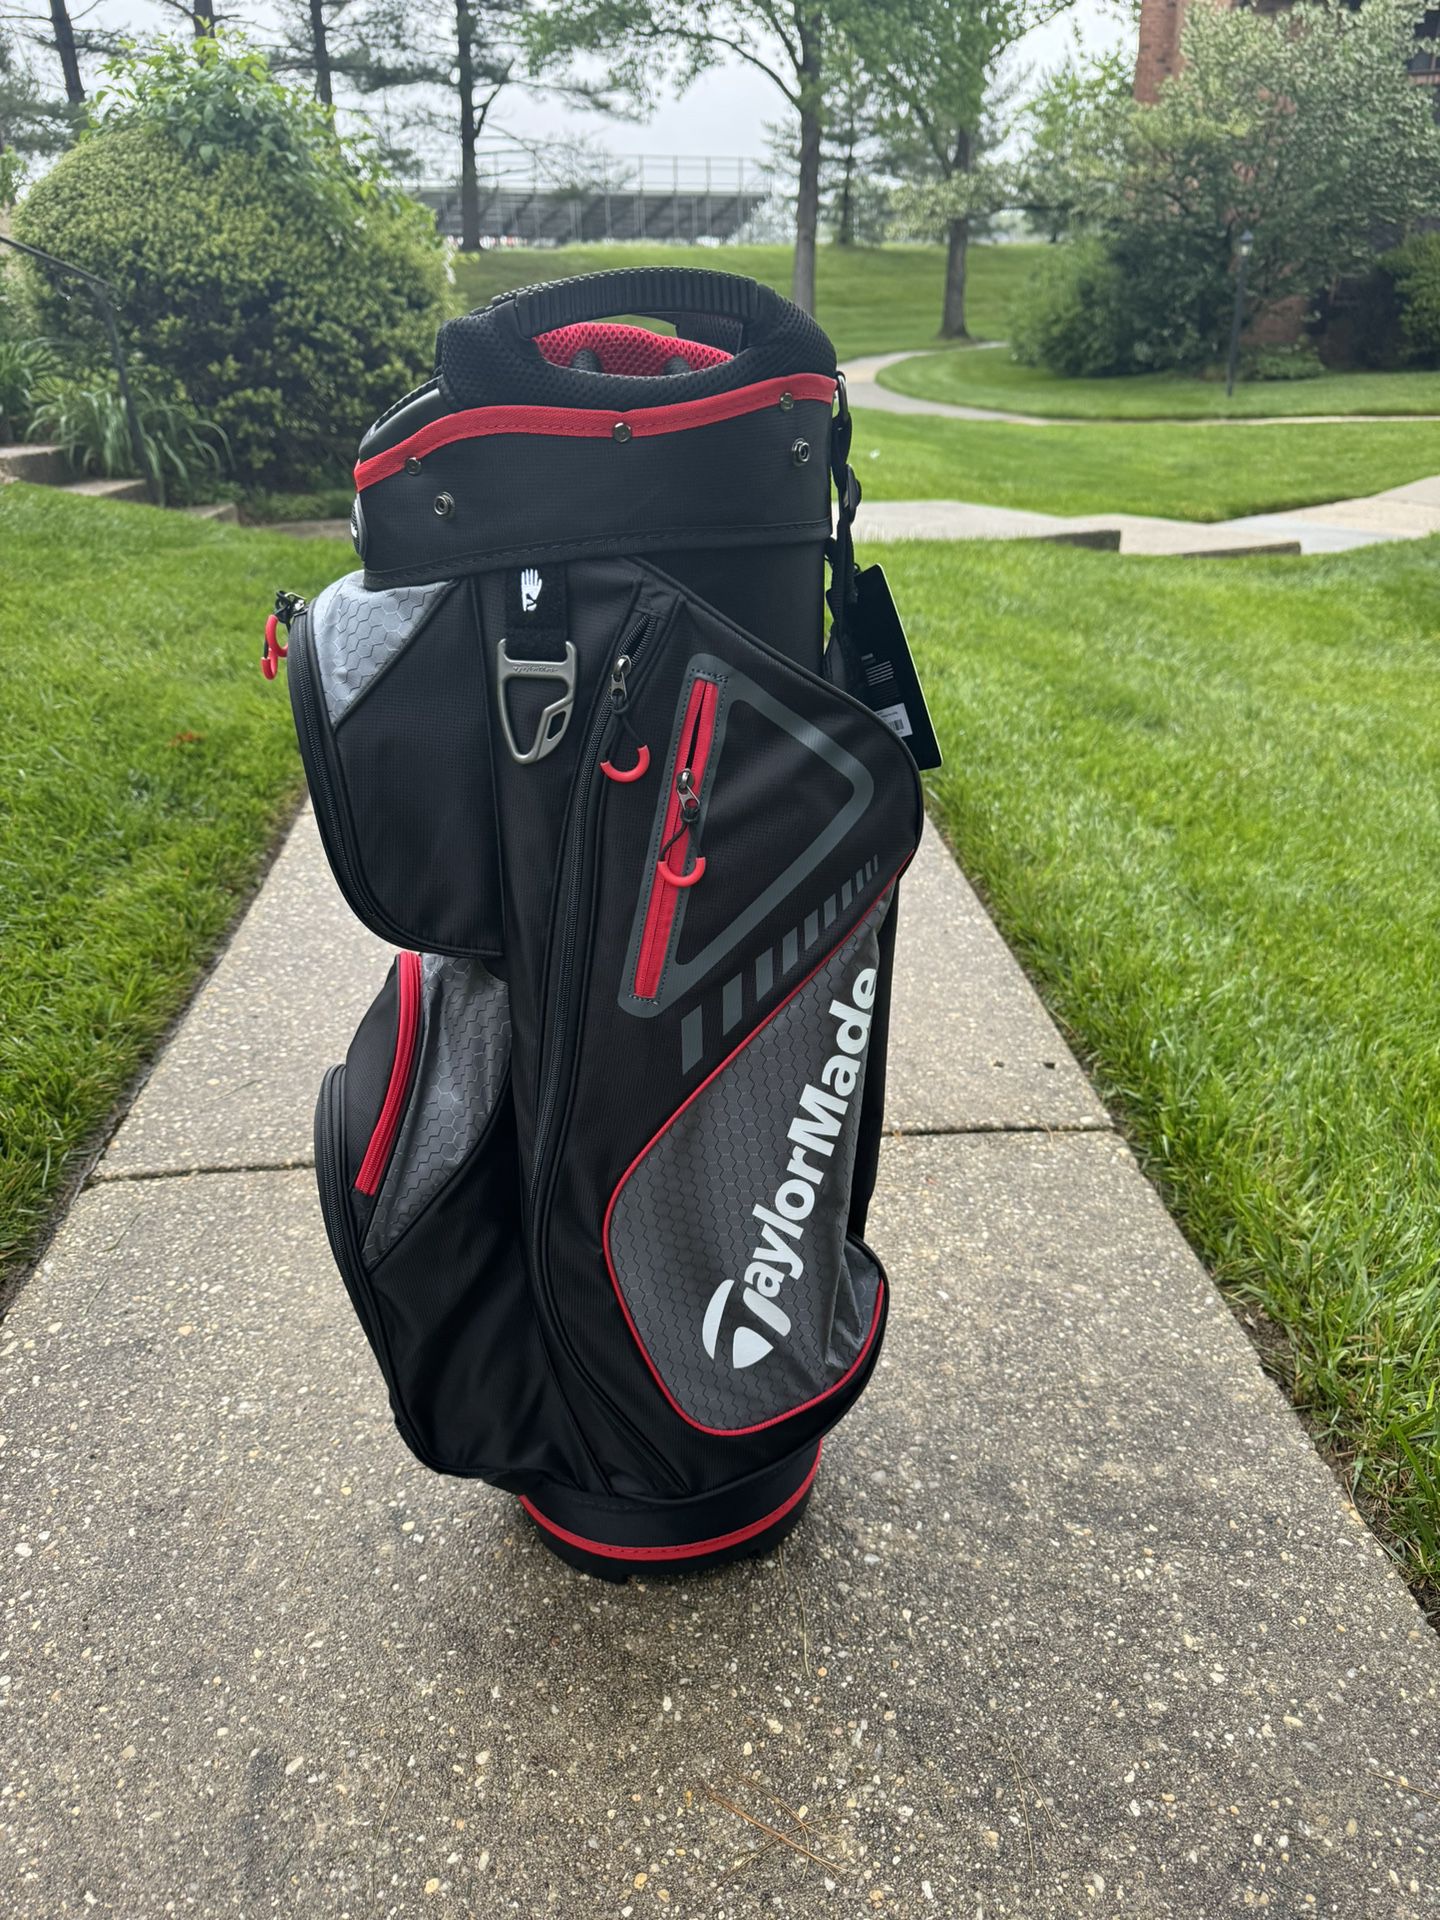 TaylorMade Select Plus Cart Golf Bag New